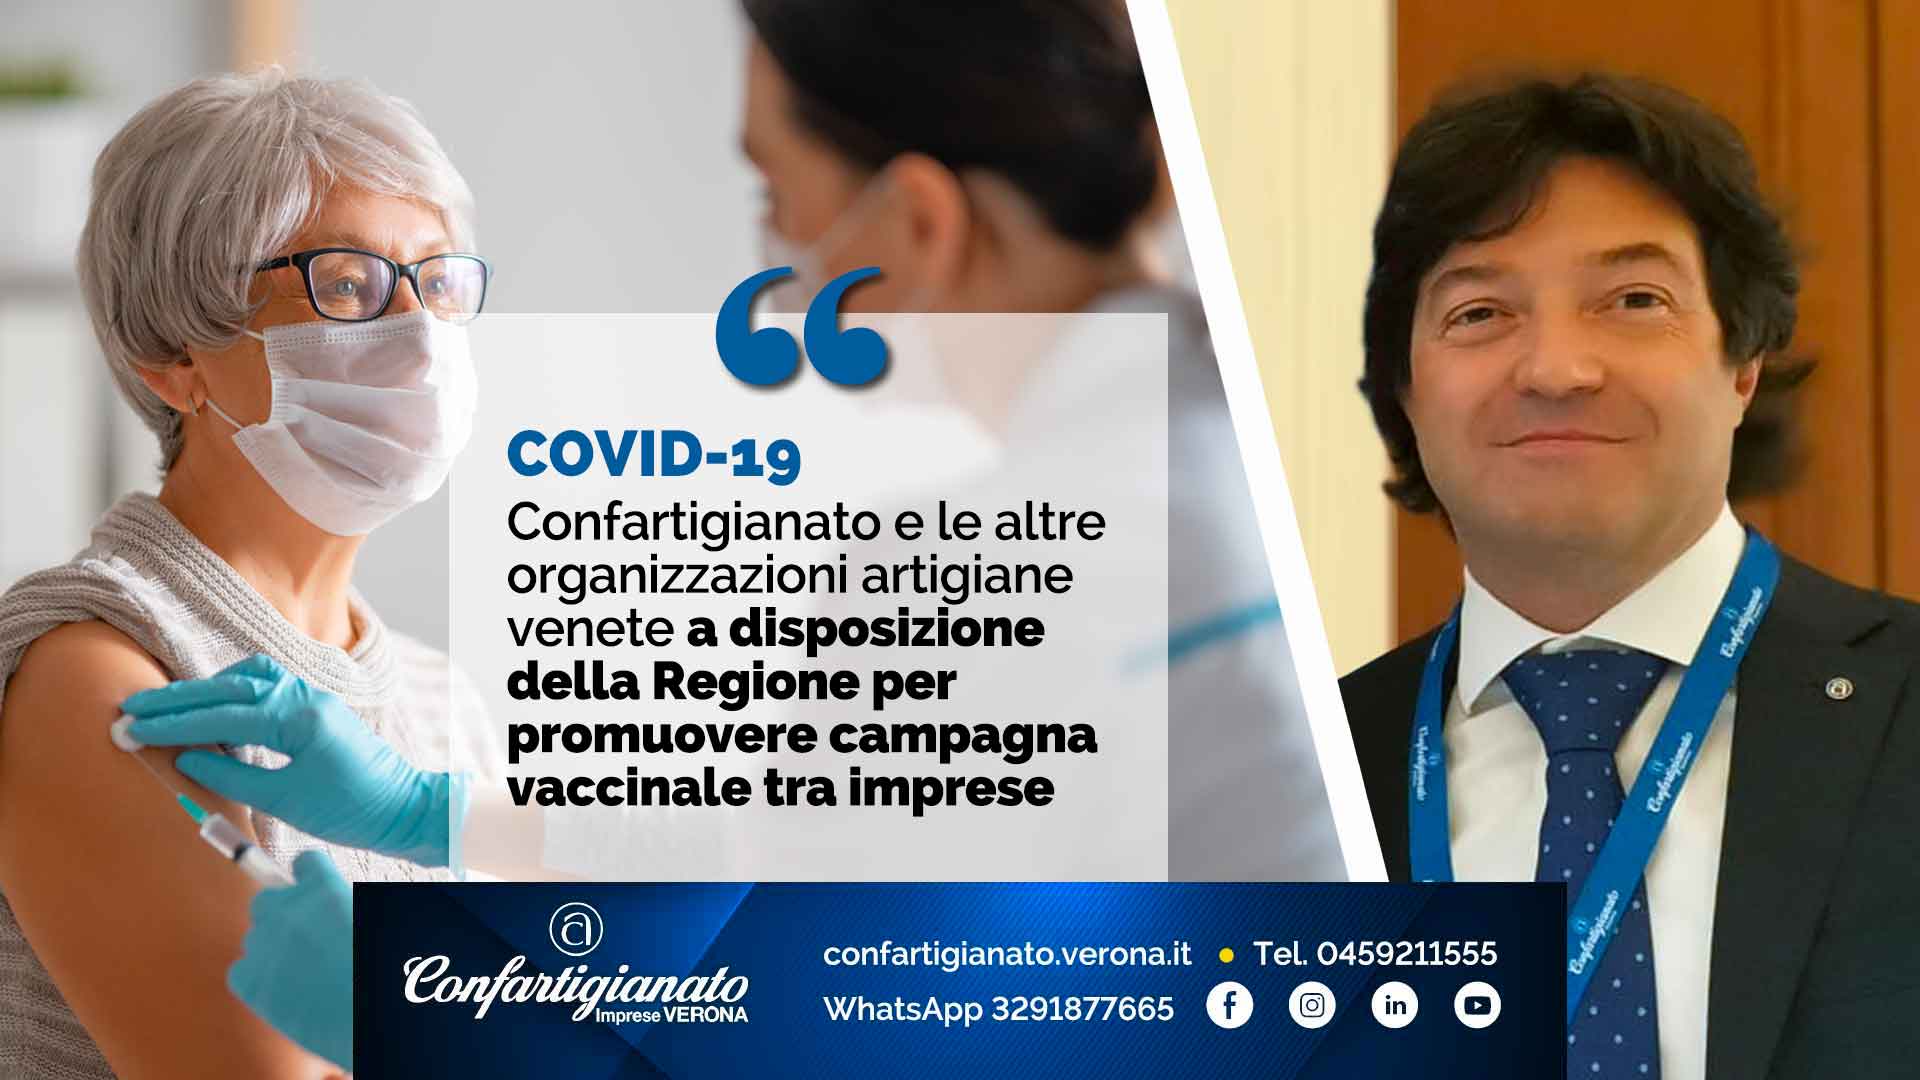 COVID-19 – Confartigianato e organizzazioni artigiane del Veneto a disposizione della Regione per promuovere campagna vaccinale tra imprese